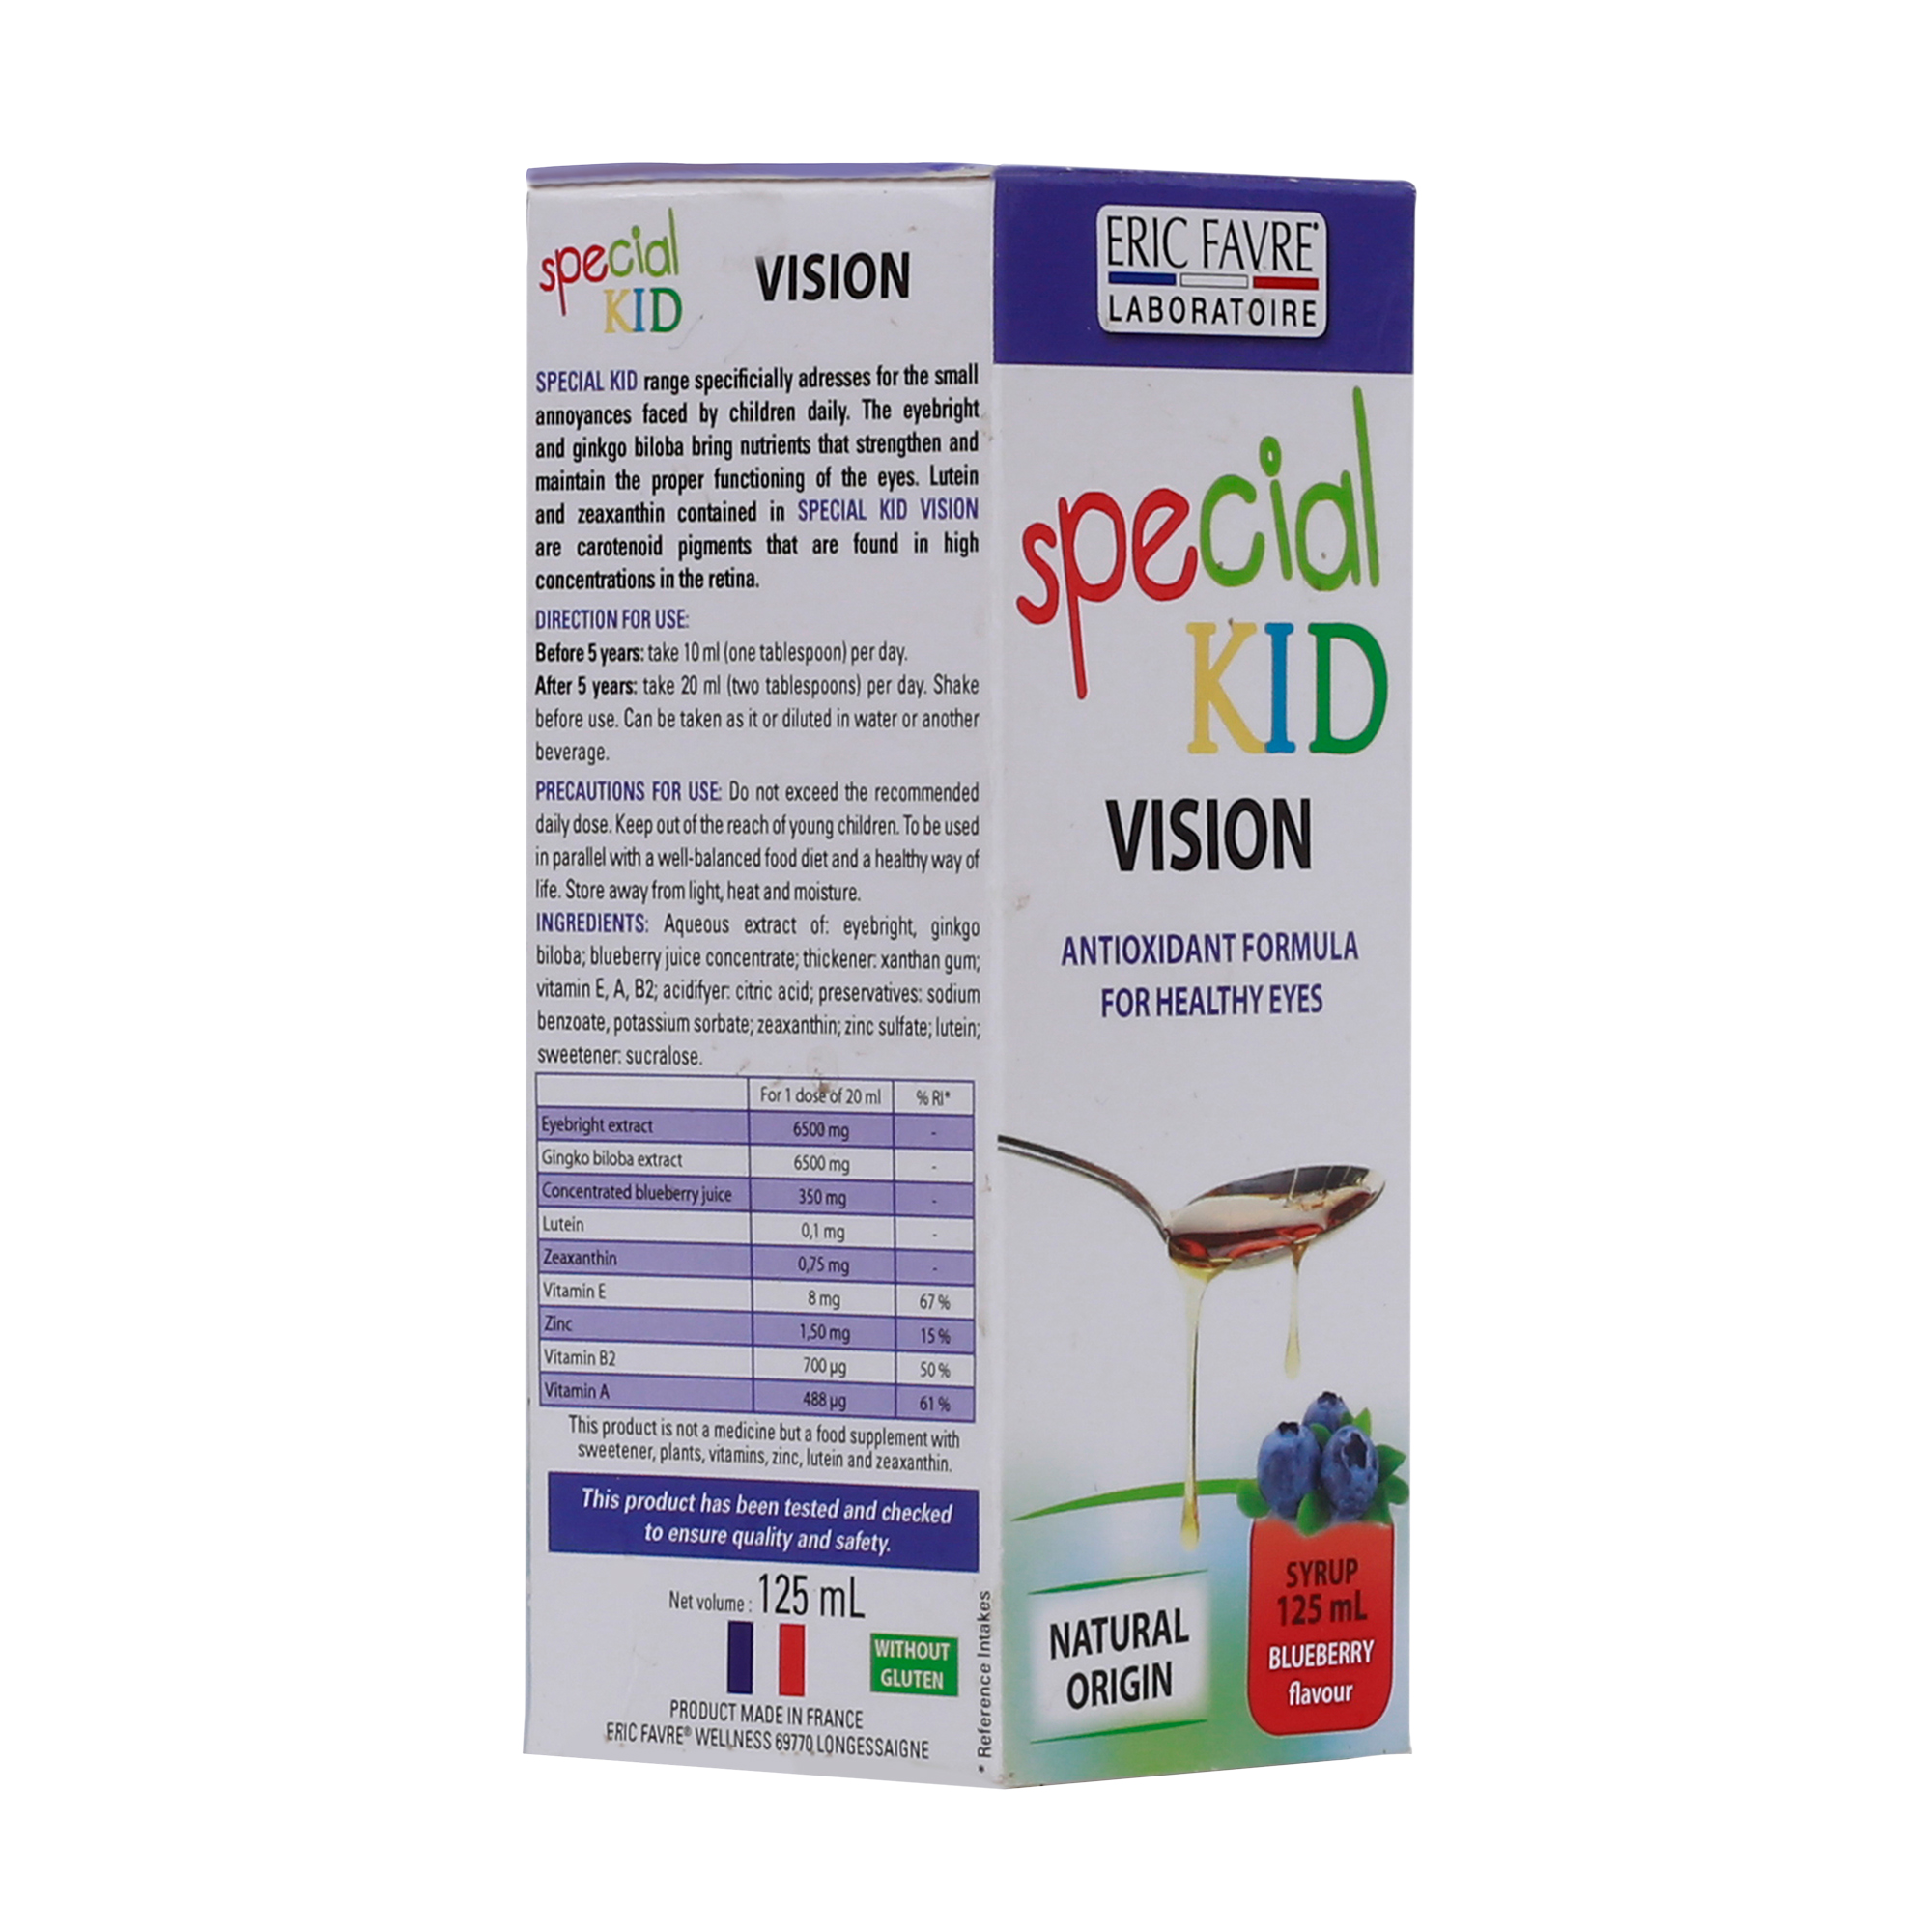 TPBVSK Special Kid Vision - Siro tăng cường thị lực, cơ chế bảo vệ mắt 3 lớp, hỗ trợ ngăn ngừa ánh sáng xanh (125ml) [Nhập khẩu Pháp]